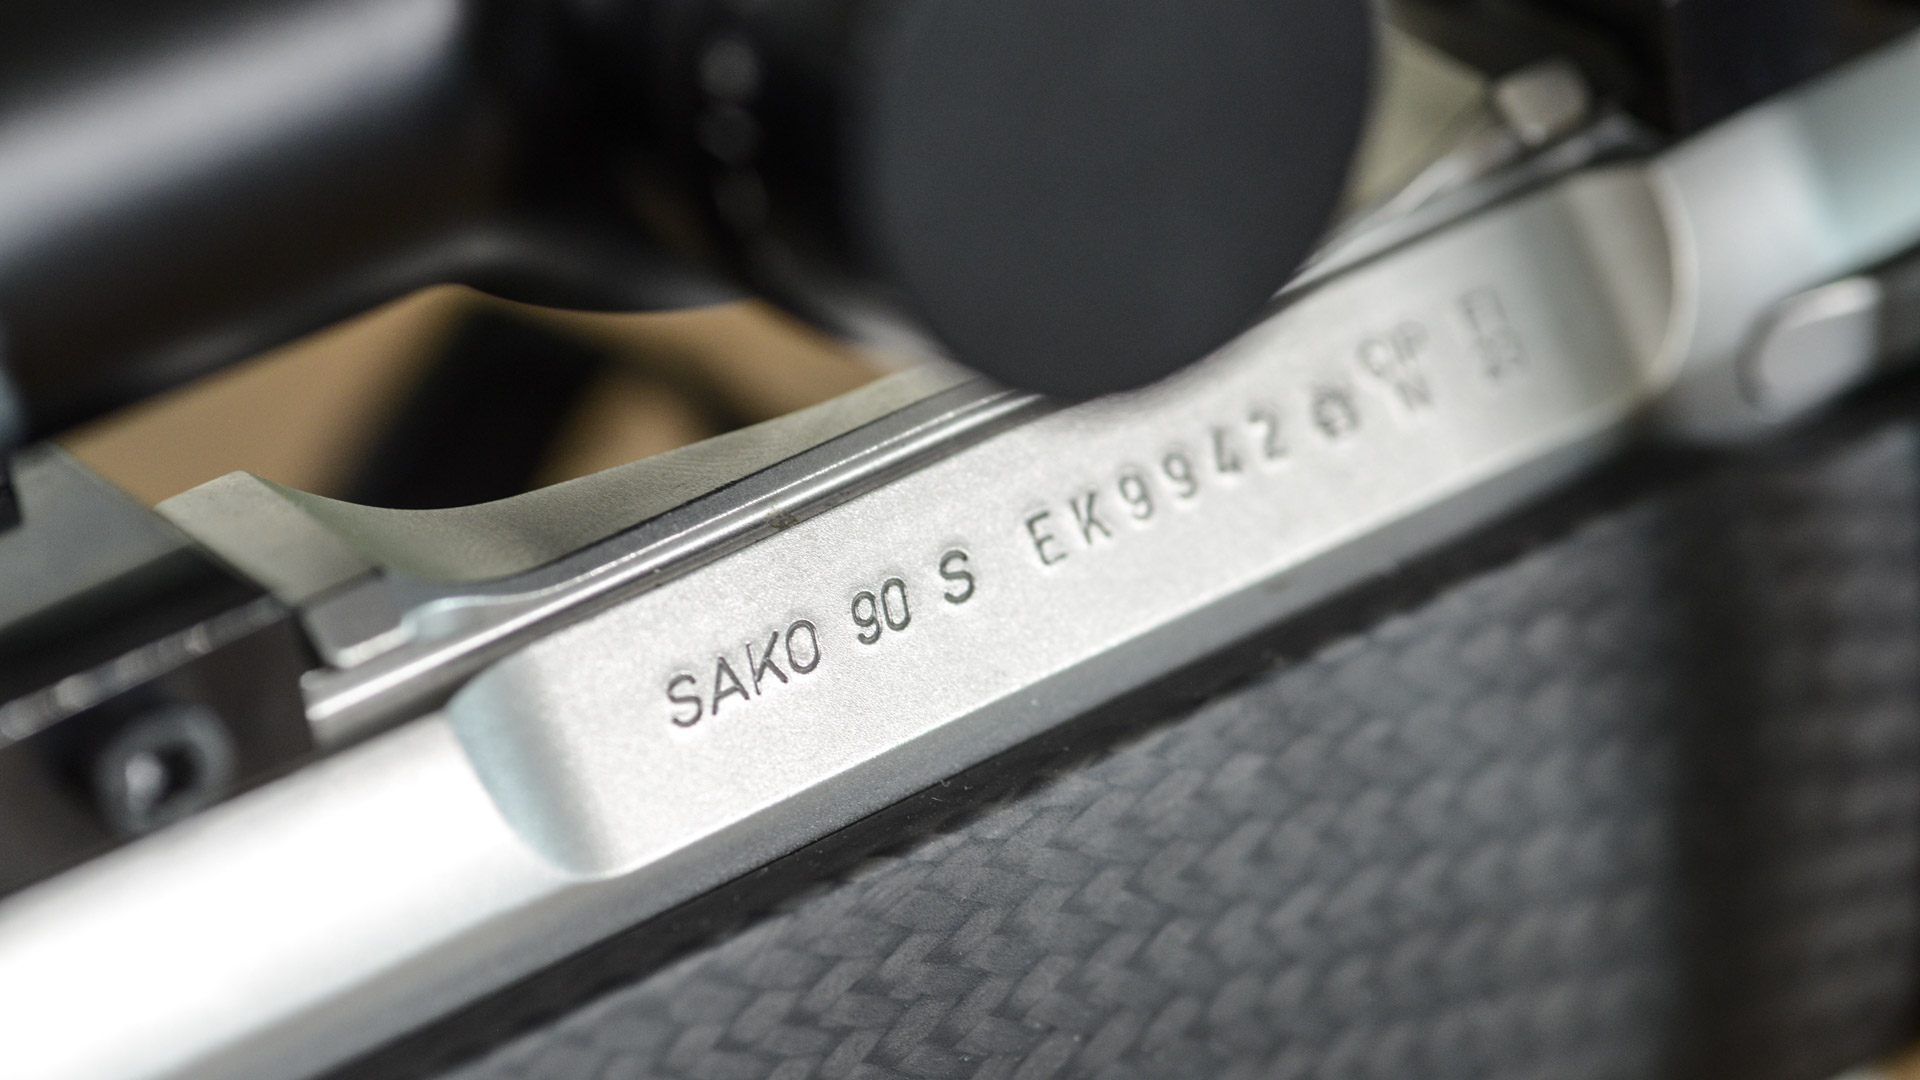 La sigla della nuova Sako 90, la nuova proposta del produttore finlandese per la caccia di selezione